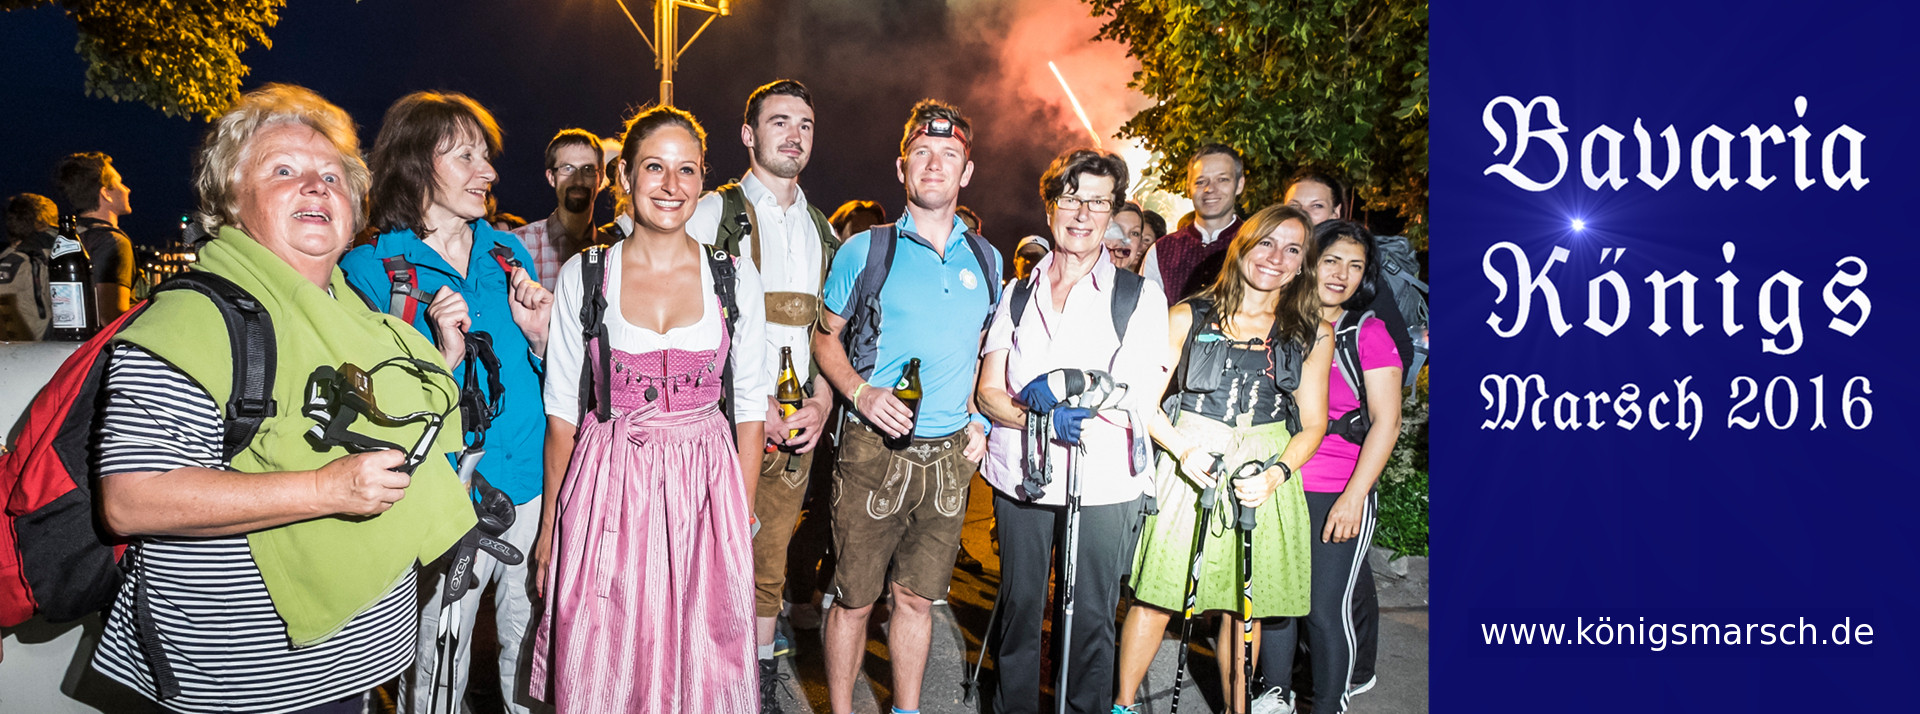 News - Central: Start zur Kultur-Nacht-Wanderung in Starnberg